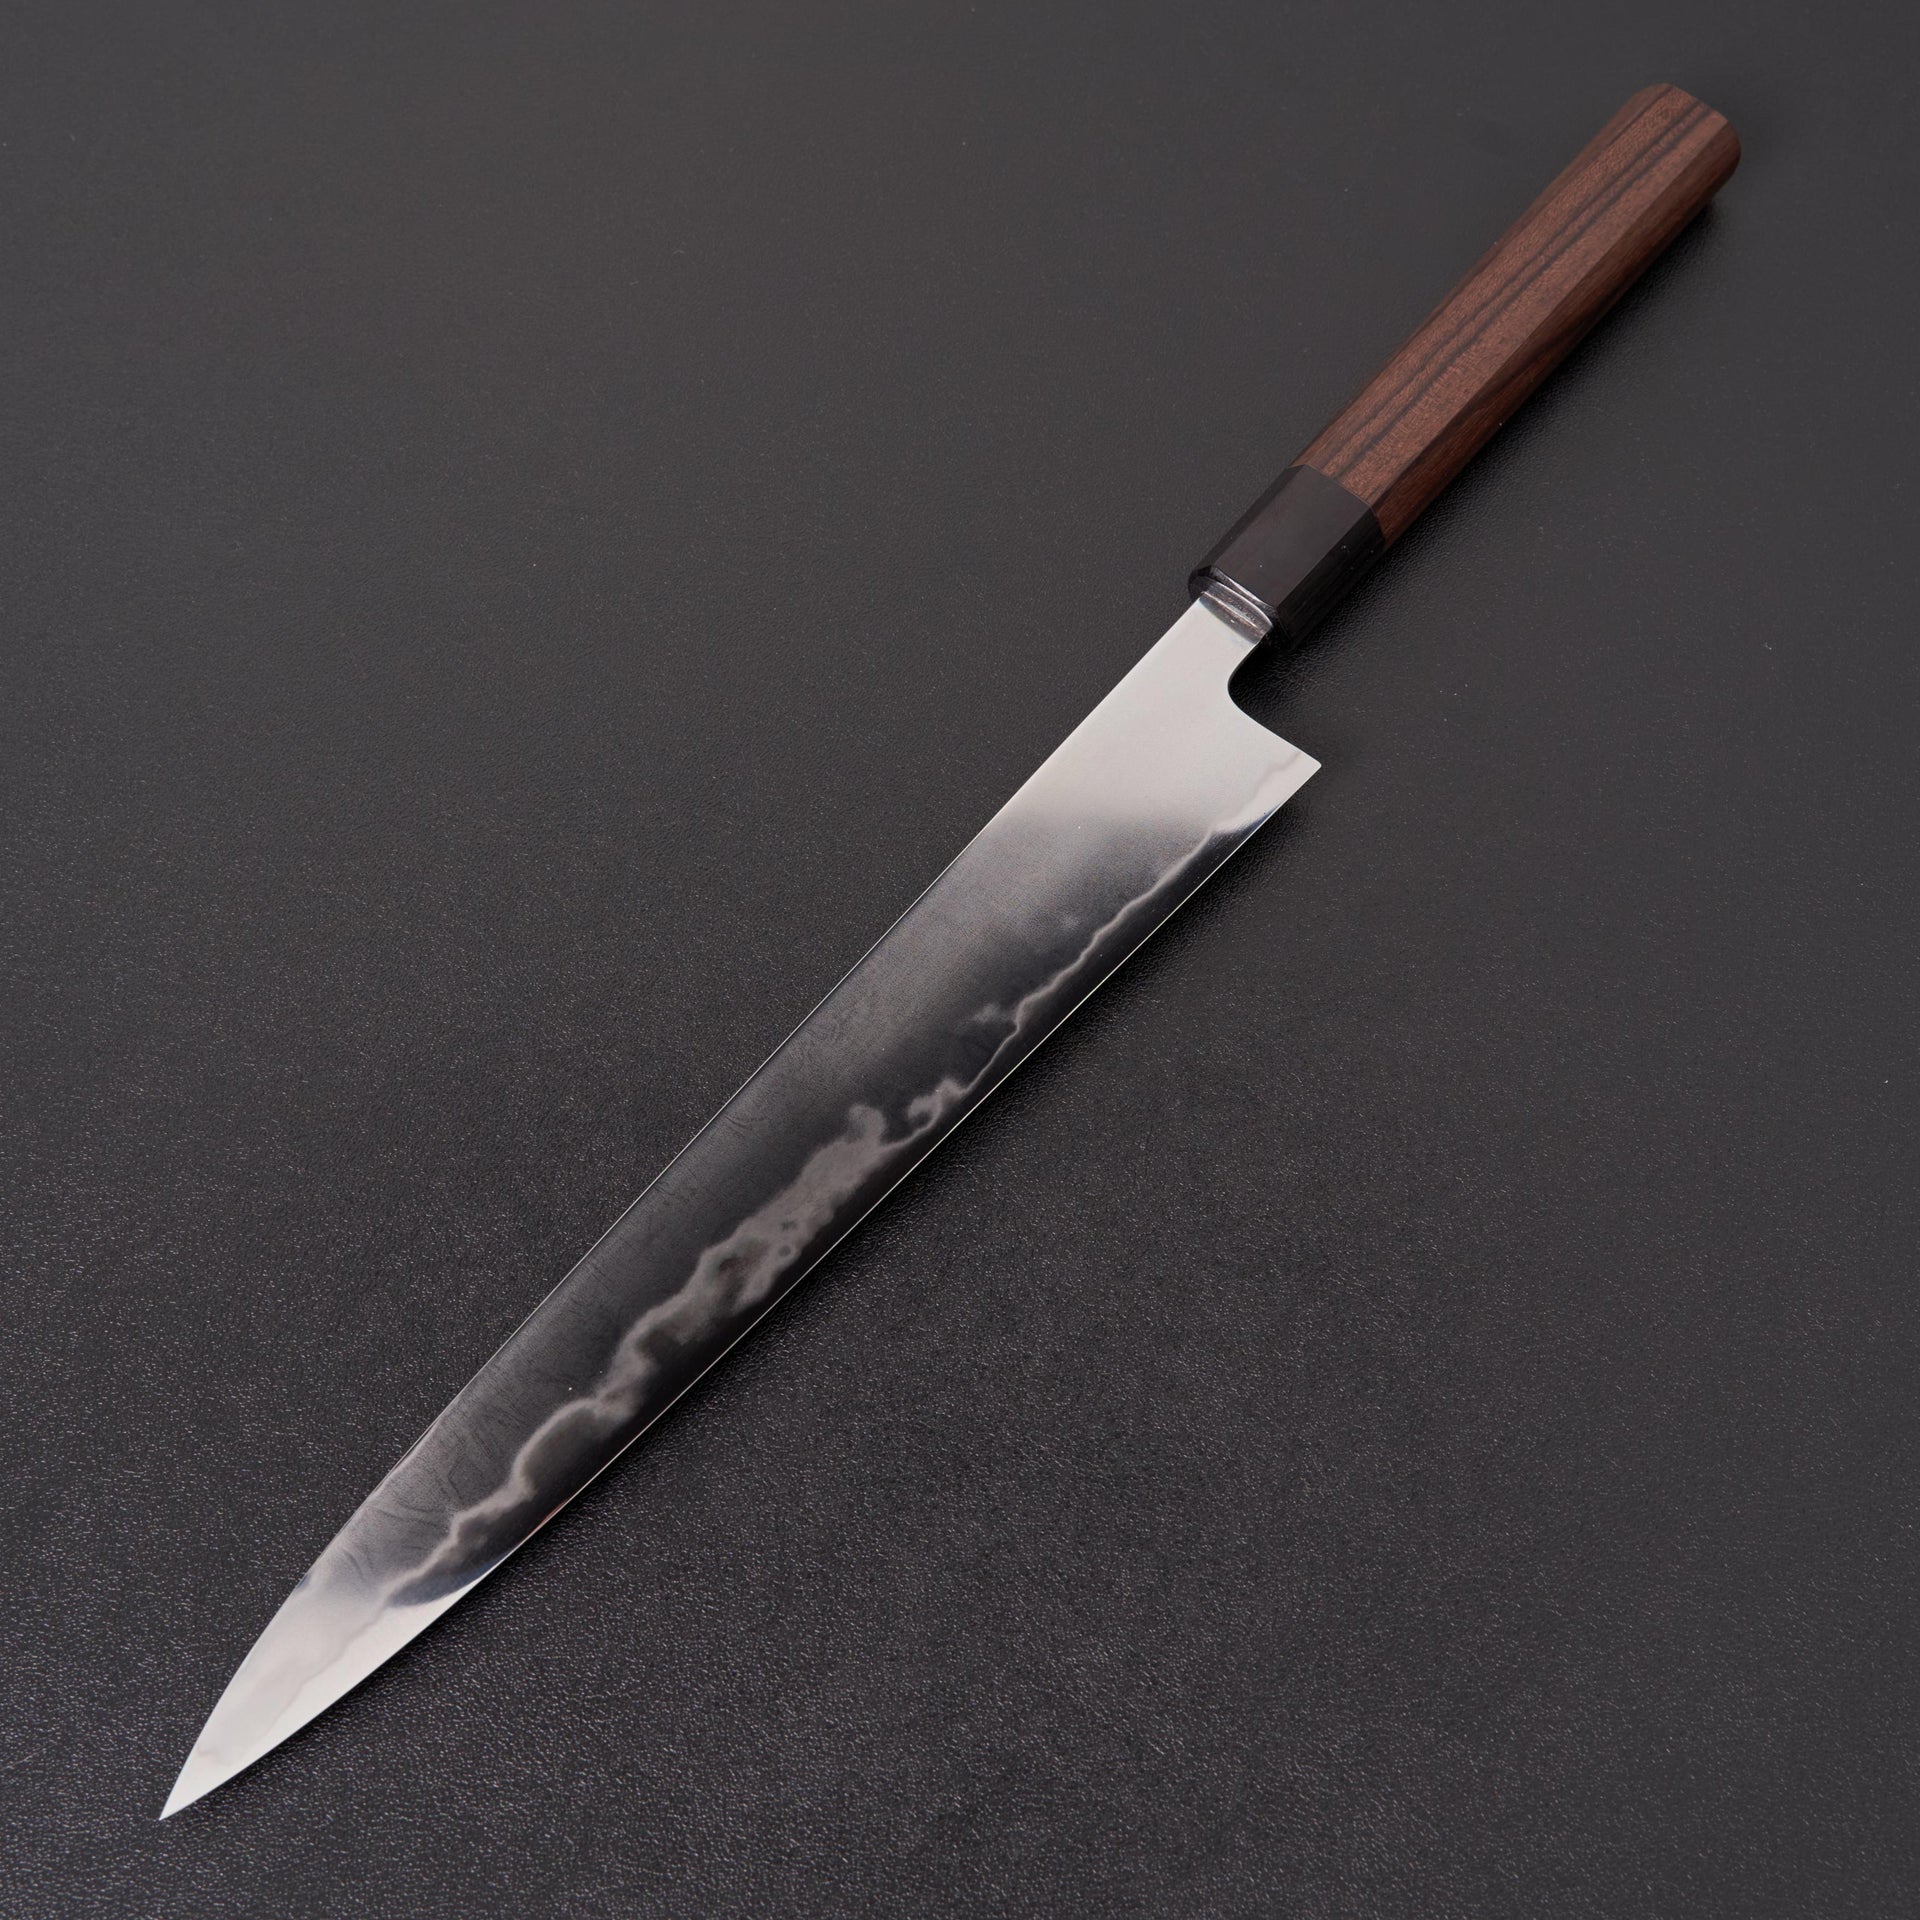 Takada no Hamono Suiboku Rosewood White #2 Sujihiki 270mm-Knife-Takada no Hamono-Carbon Knife Co